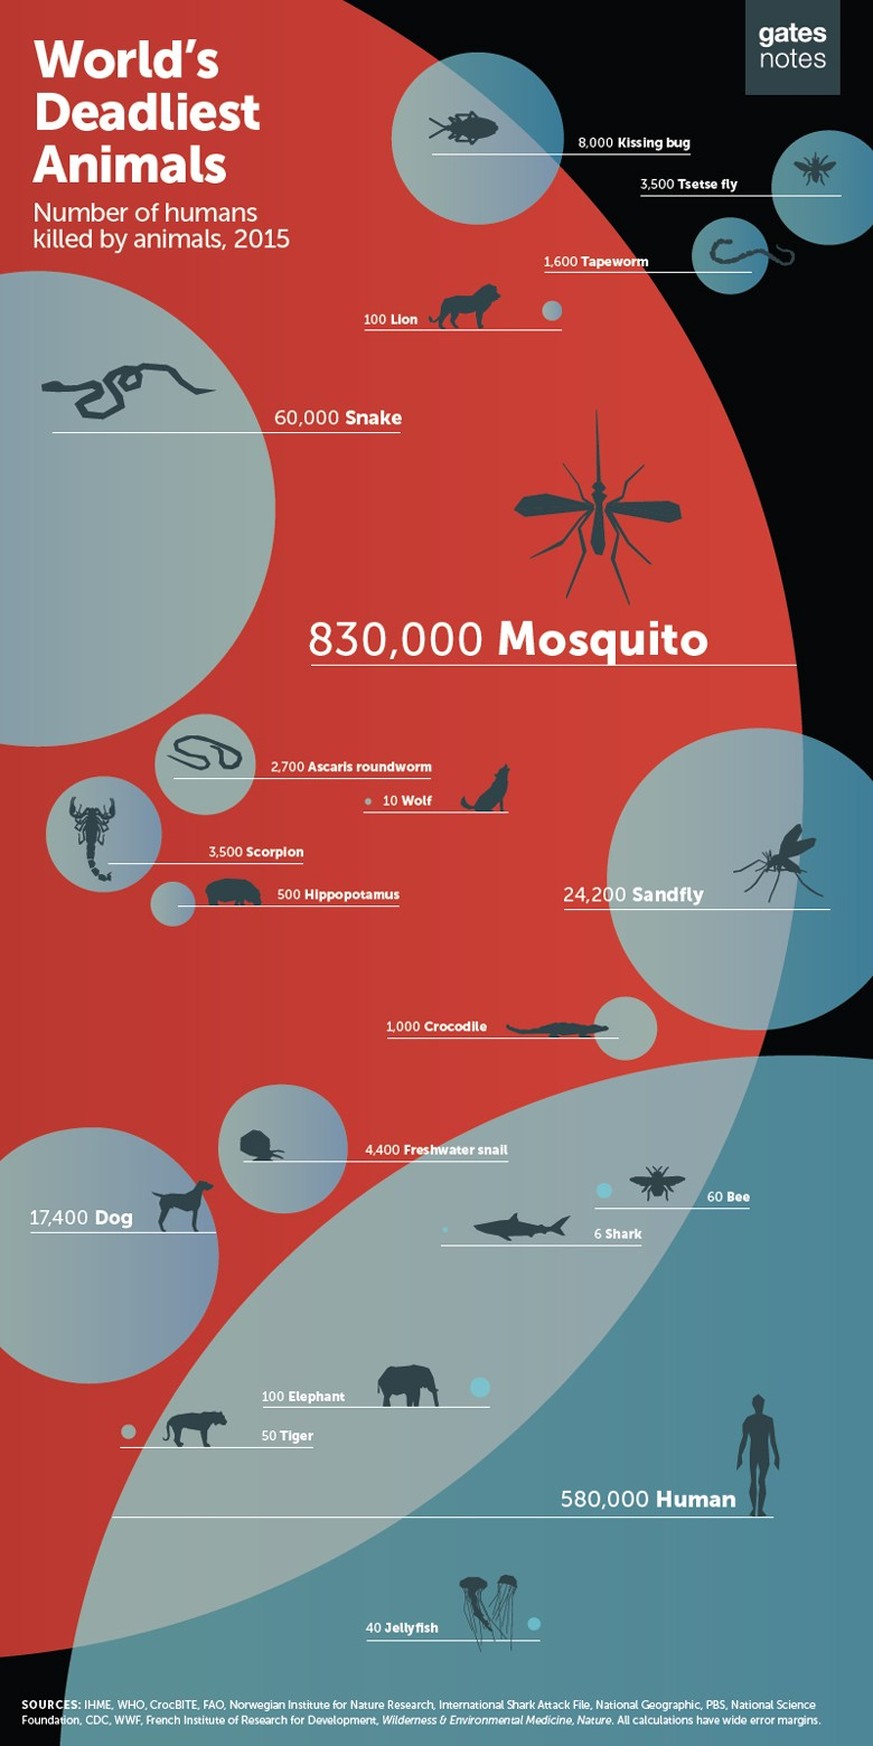 Die tödlichsten Tiere der Welt
https://www.gatesnotes.com/Health/Mapping-the-End-of-Malaria